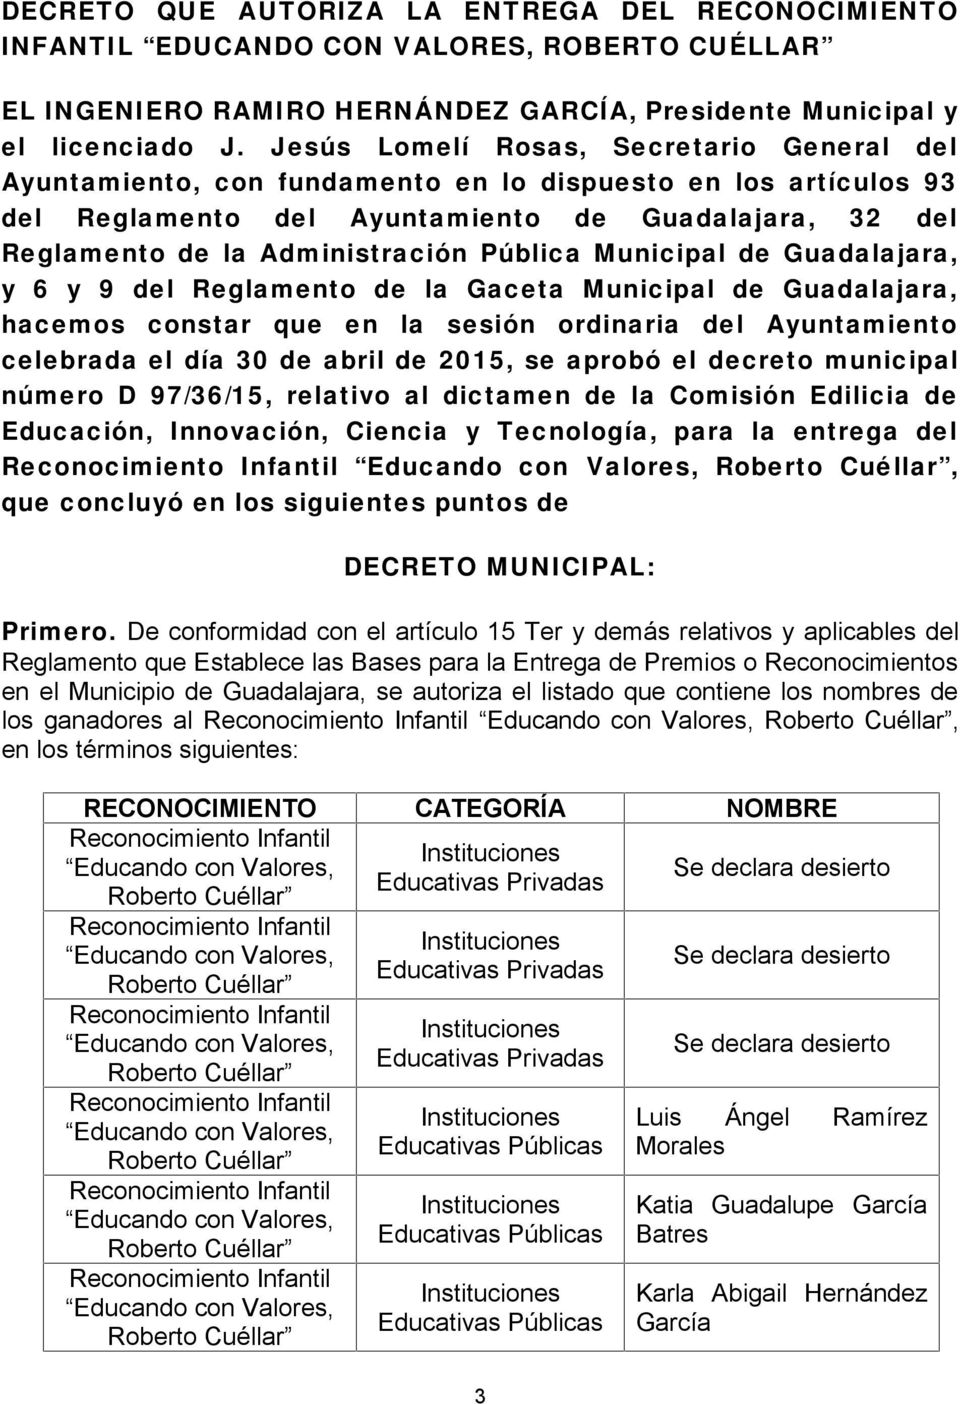 Pública Municipal de Guadalajara, y 6 y 9 del Reglamento de la Gaceta Municipal de Guadalajara, hacemos constar que en la sesión ordinaria del Ayuntamiento celebrada el día 30 de abril de 2015, se